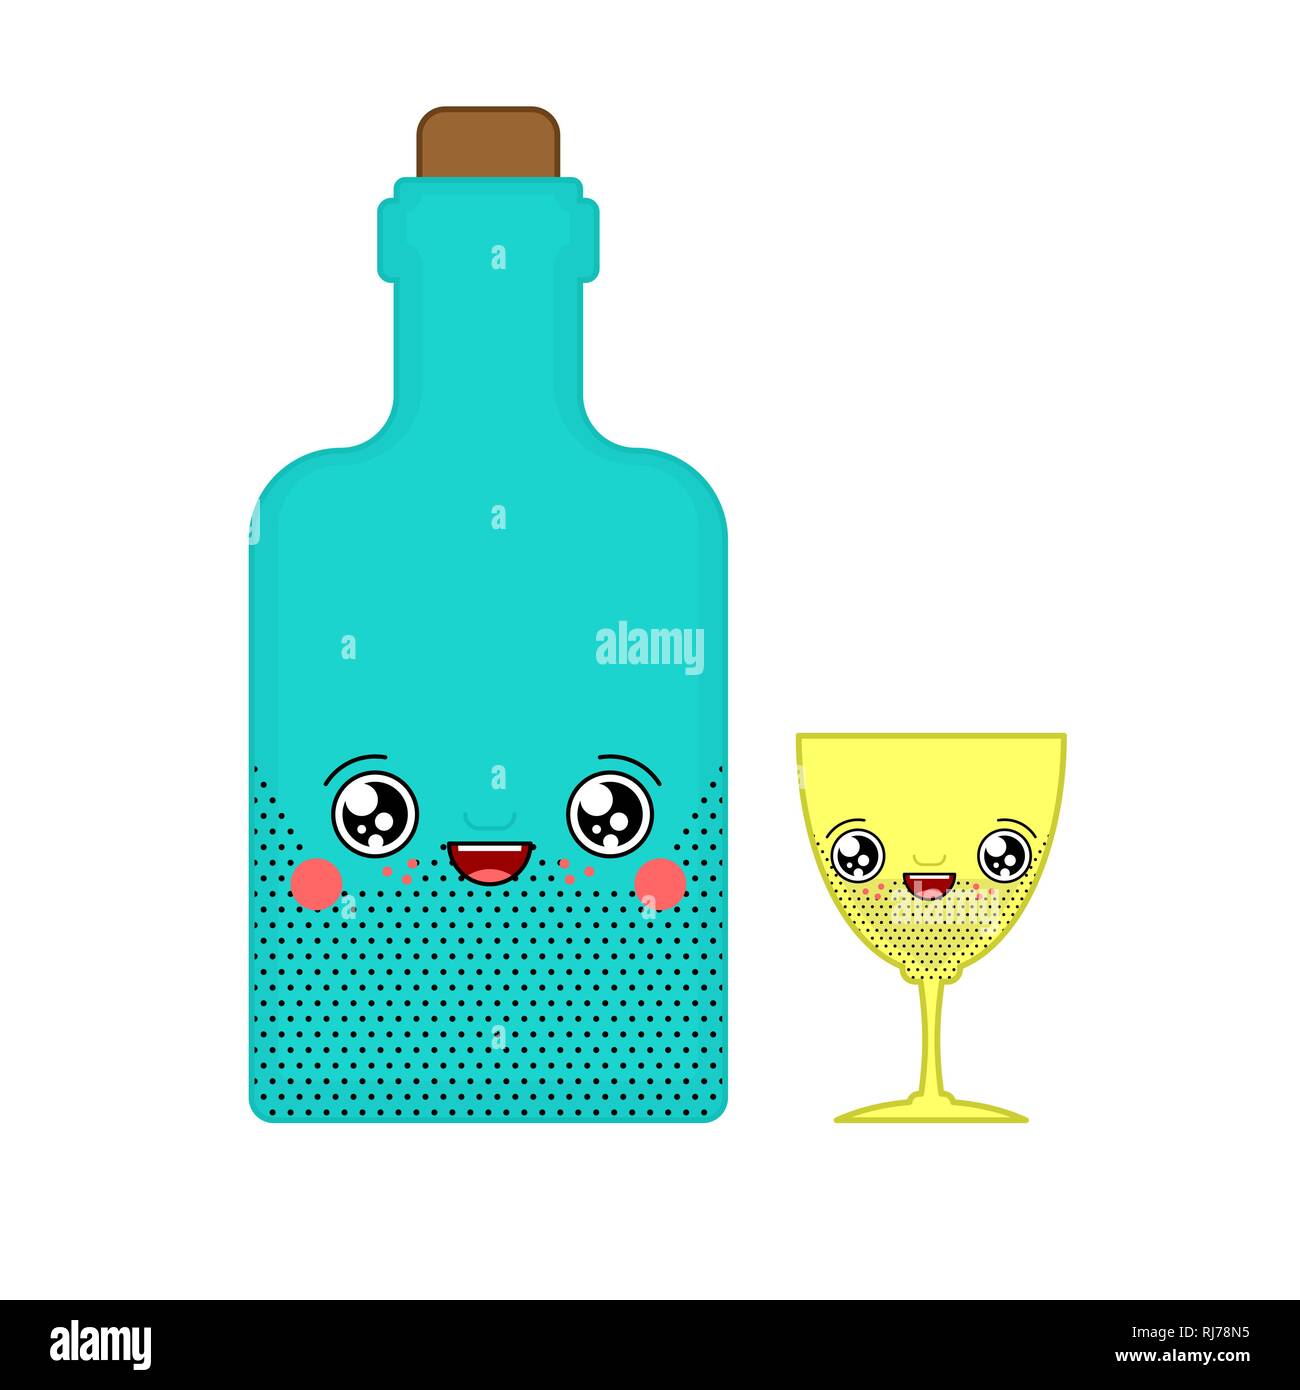 Kawaii alcohol immagini e fotografie stock ad alta risoluzione - Alamy